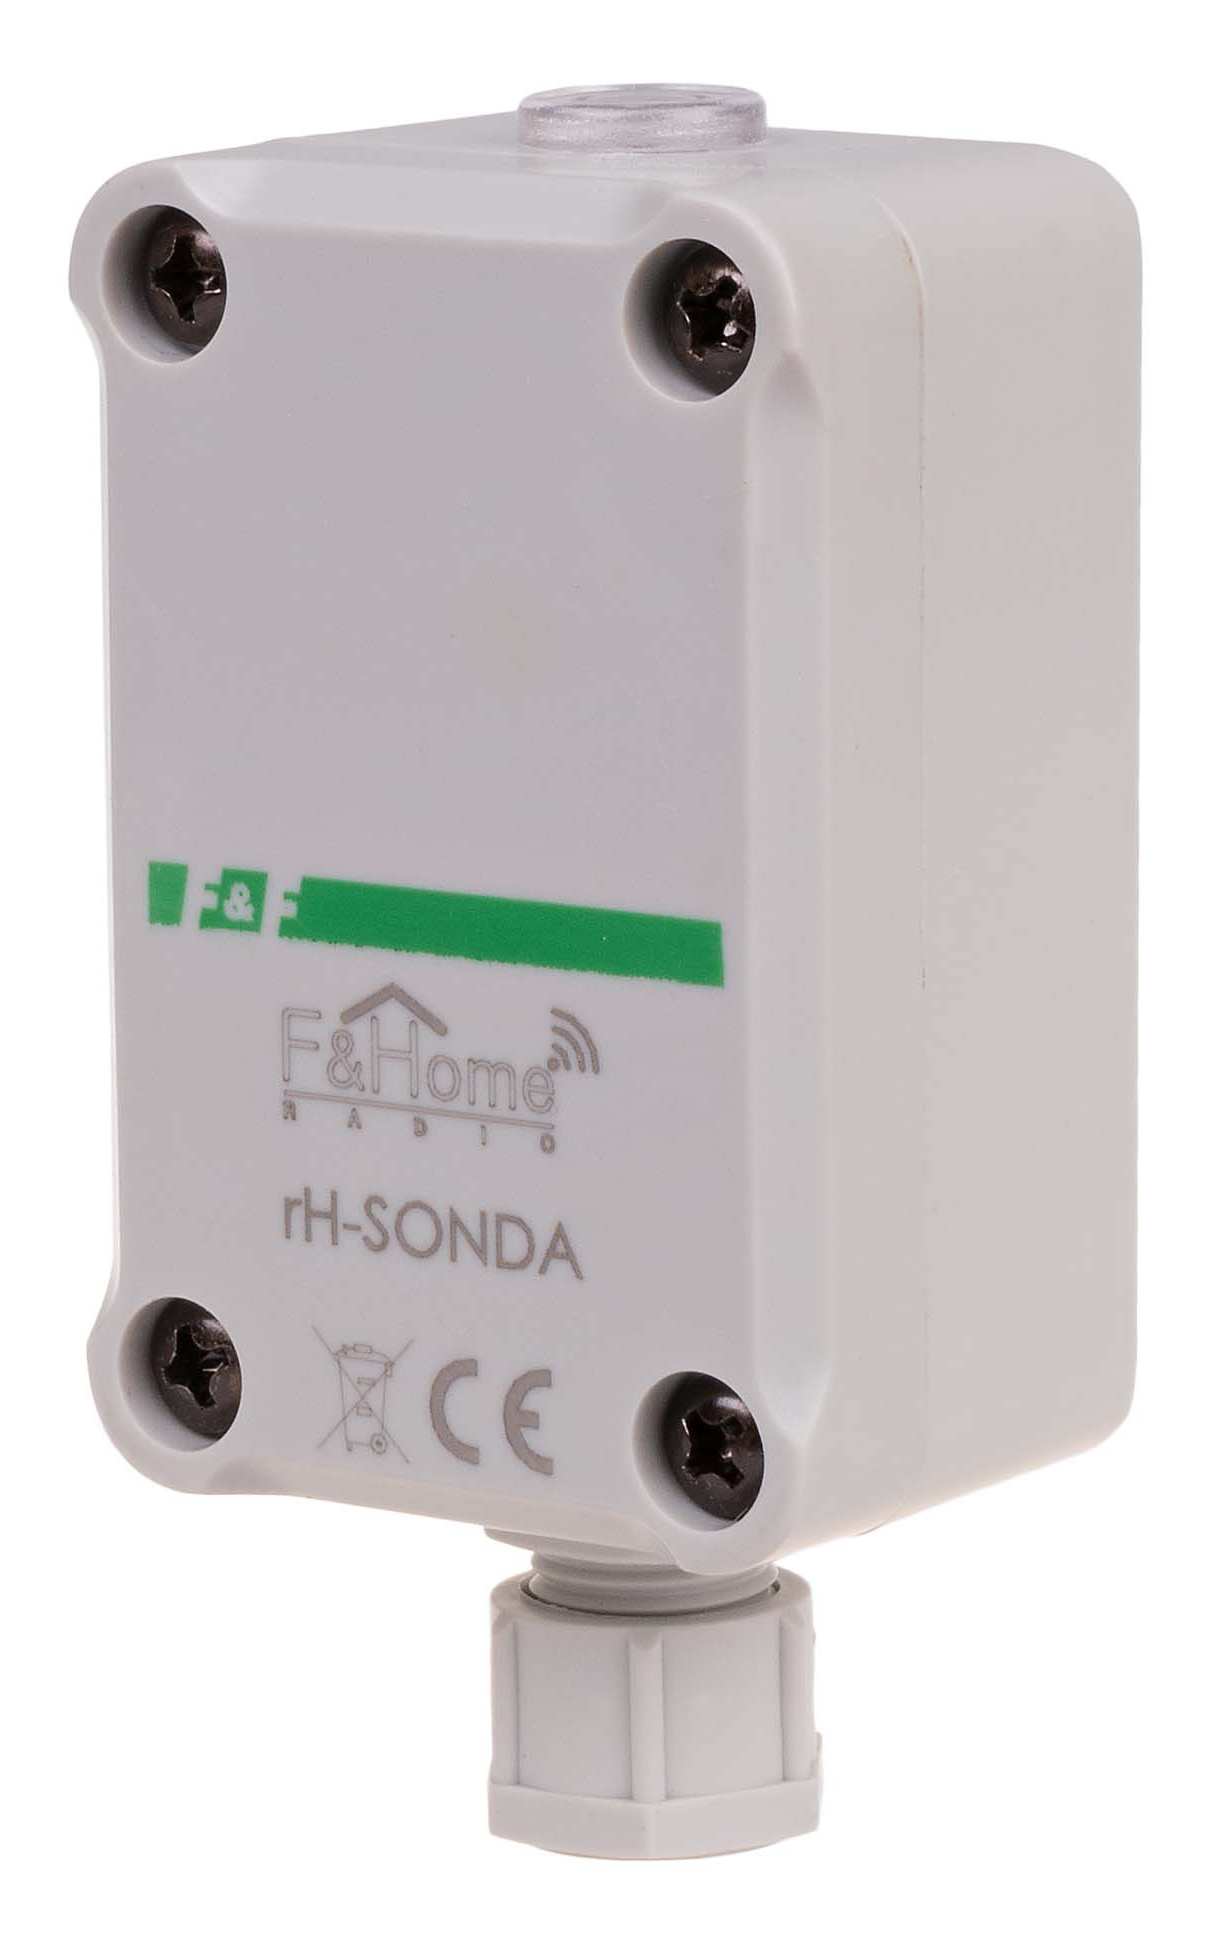 FIF EA24.001.007 rH-SONDA Выносной датчик температуры и освнности .